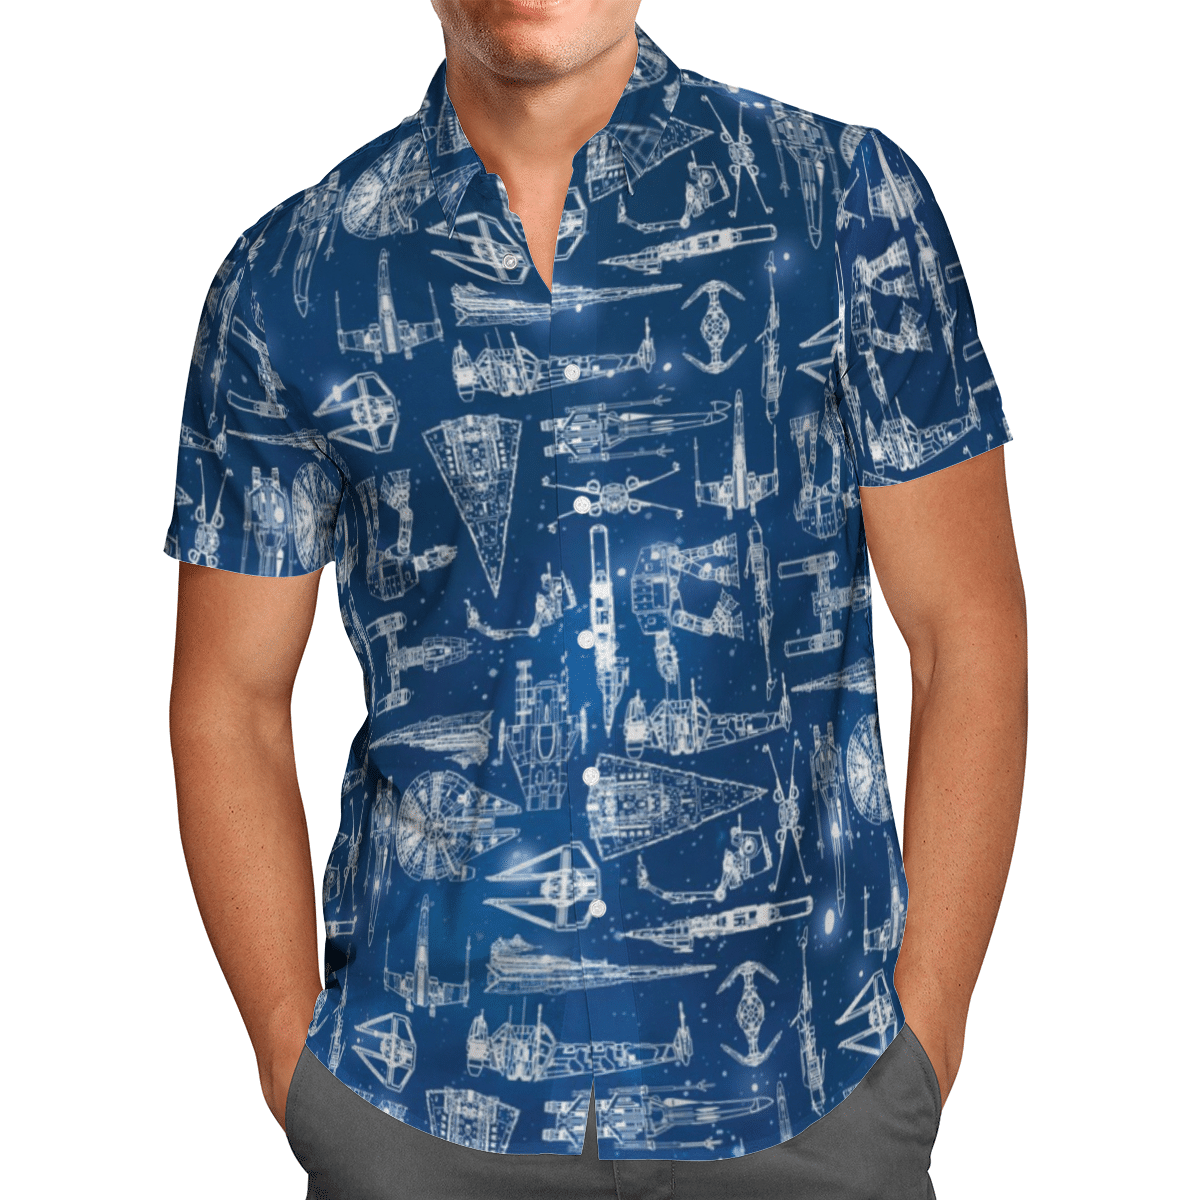 Star wars starships hawaii shirt and short 1